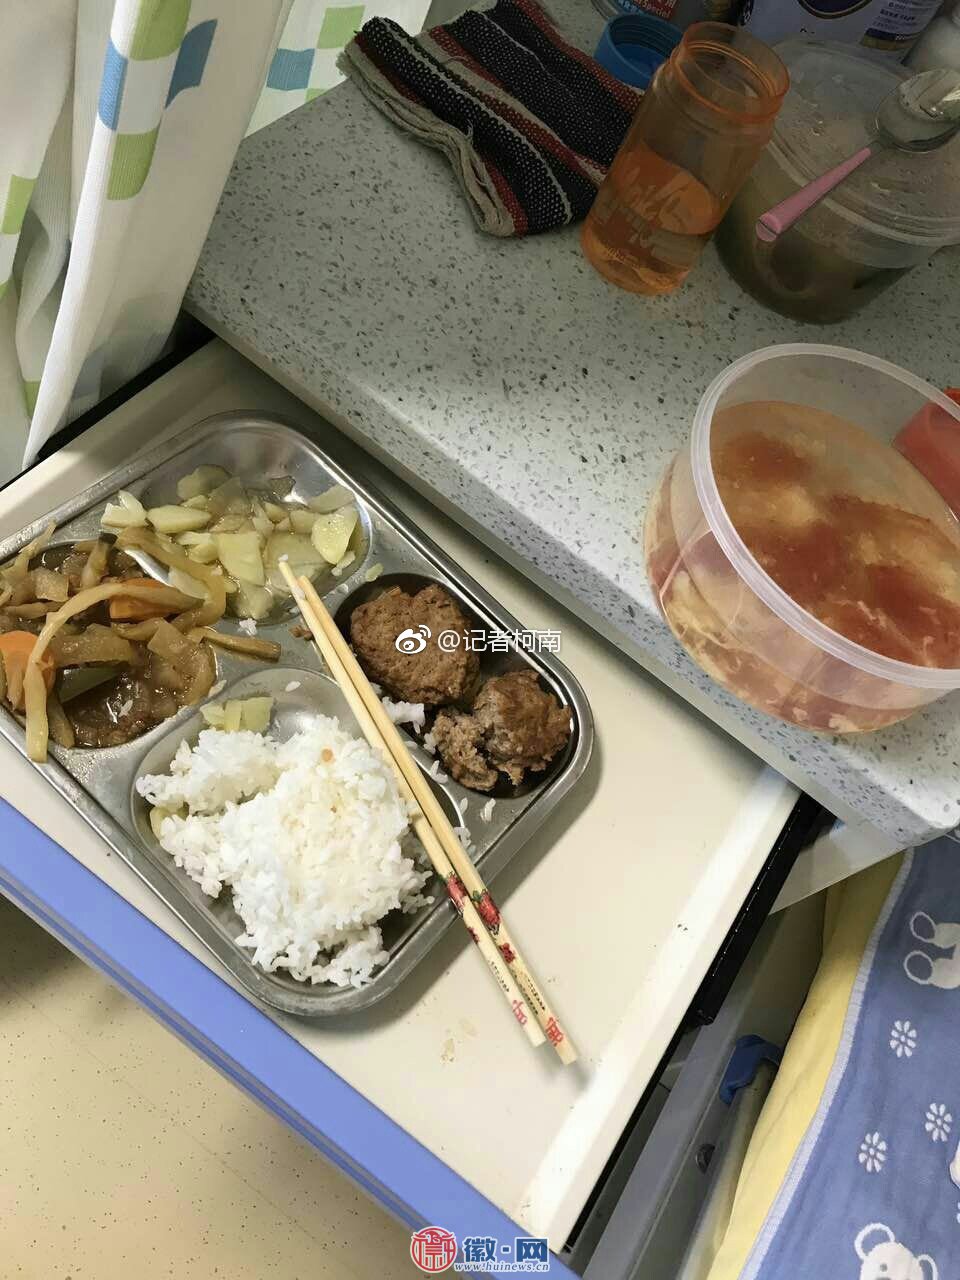 南京一儿童医院营养餐疑臭味被指腐坏 官方正调查